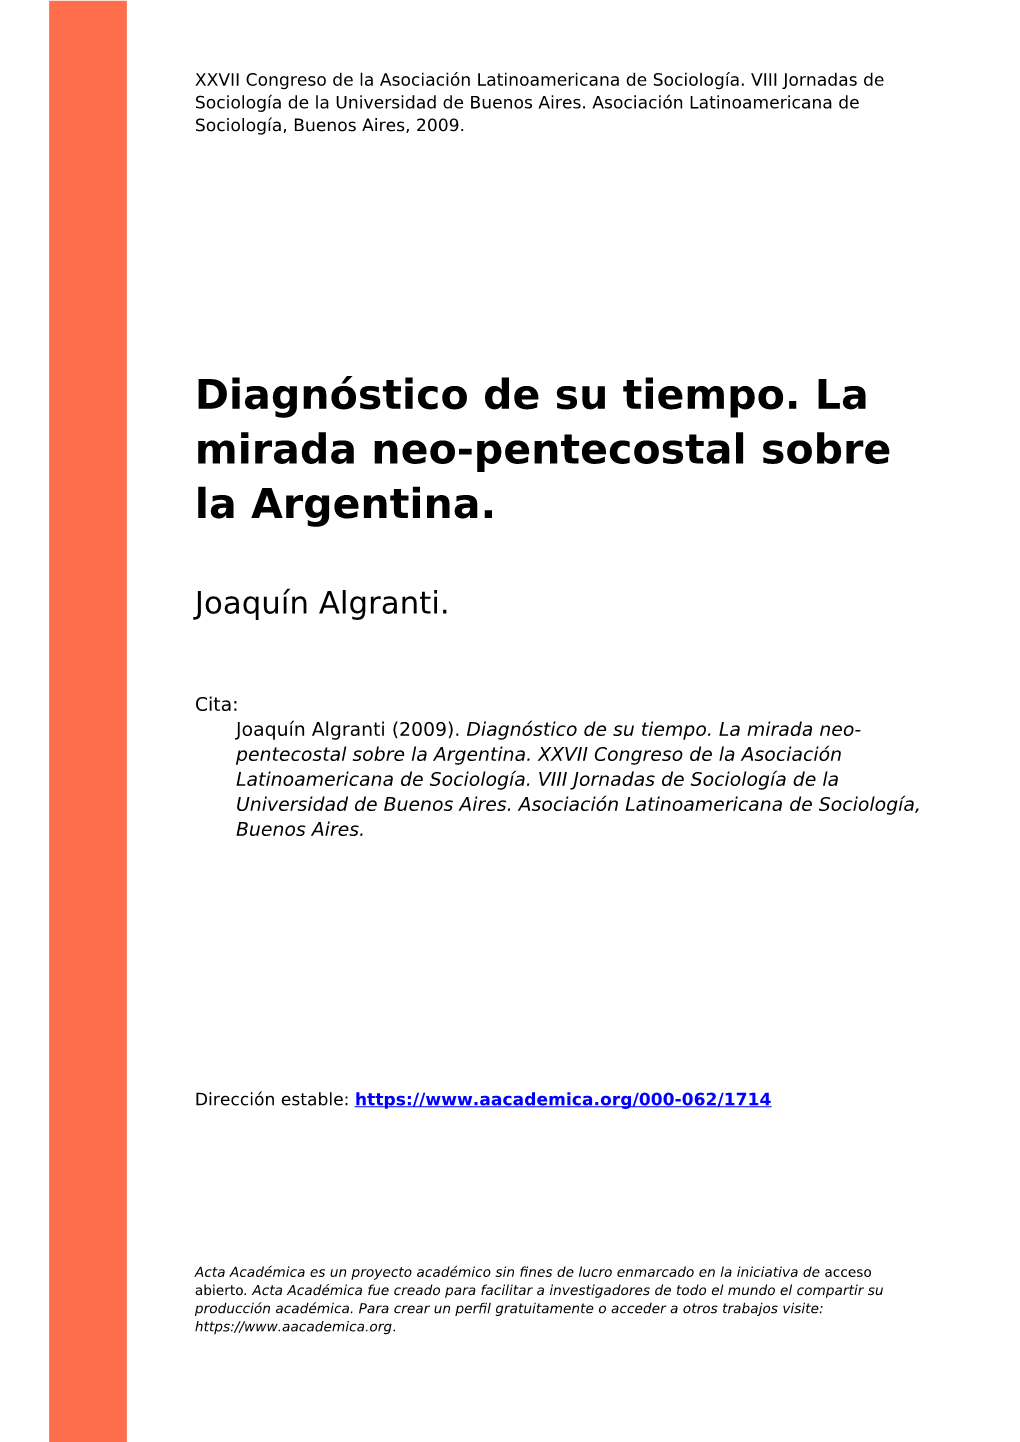 Diagnóstico De Su Tiempo. La Mirada Neo-Pentecostal Sobre La Argentina